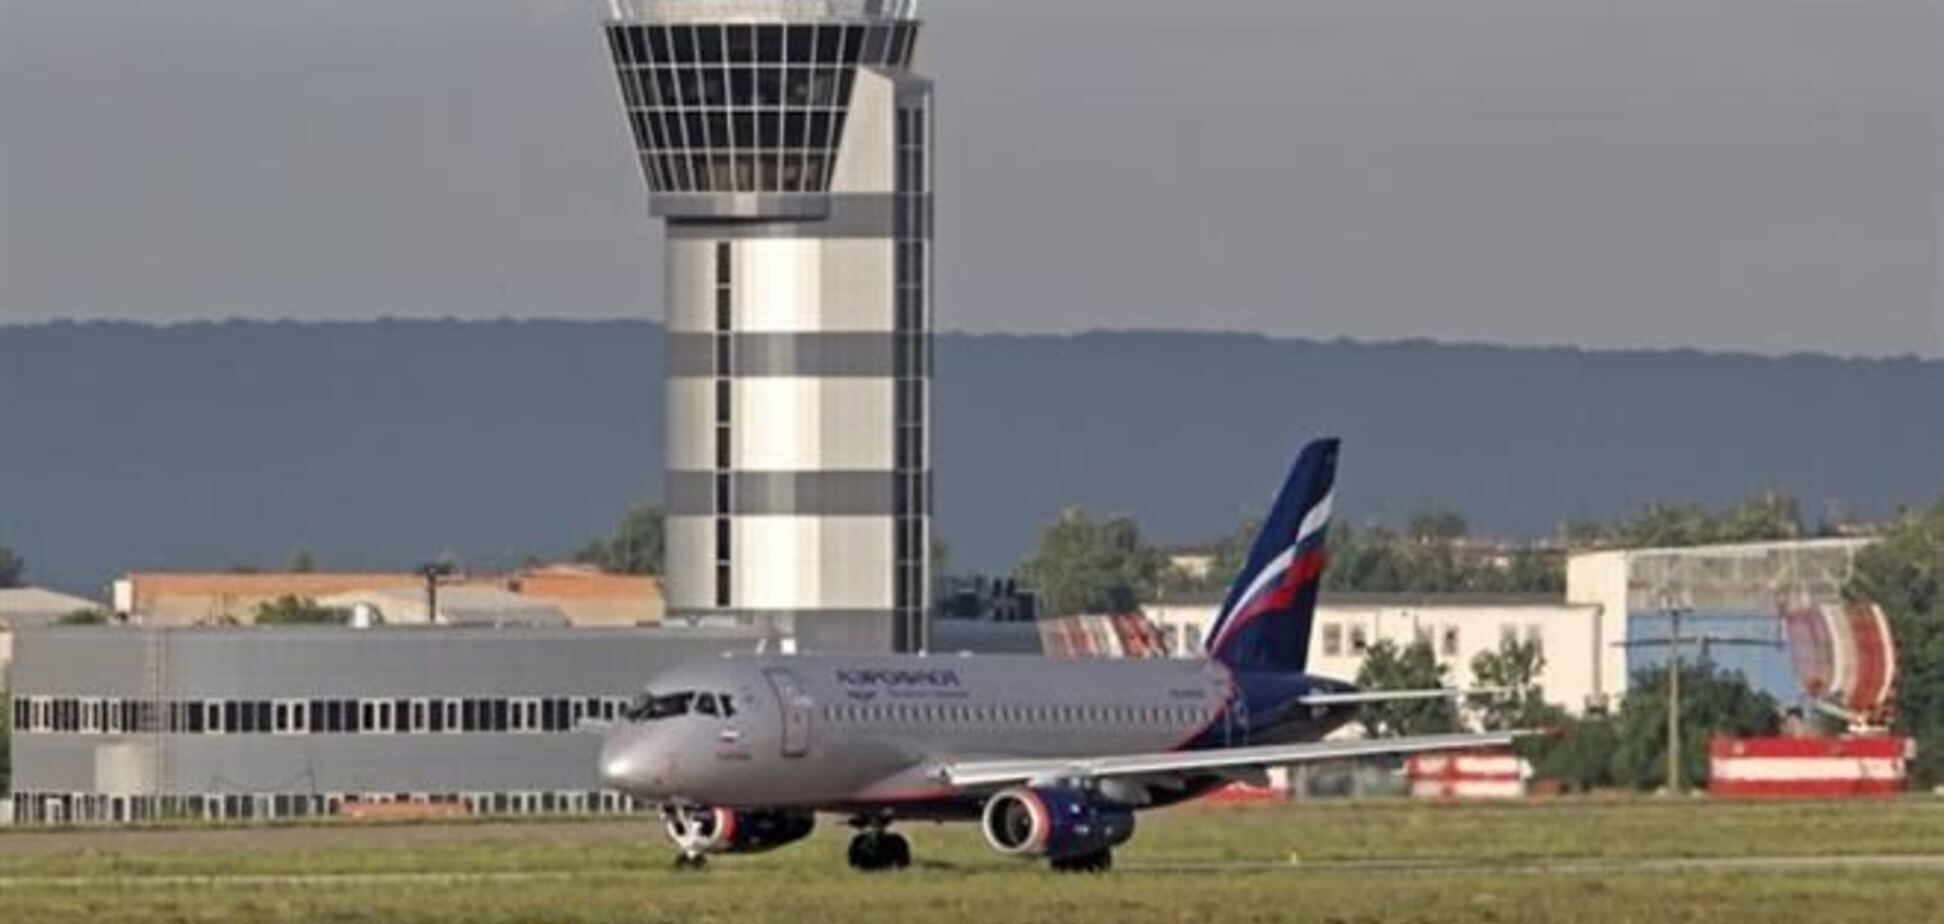 Харьковский аэропорт сможет принимать самолеты при ограниченной видимости 